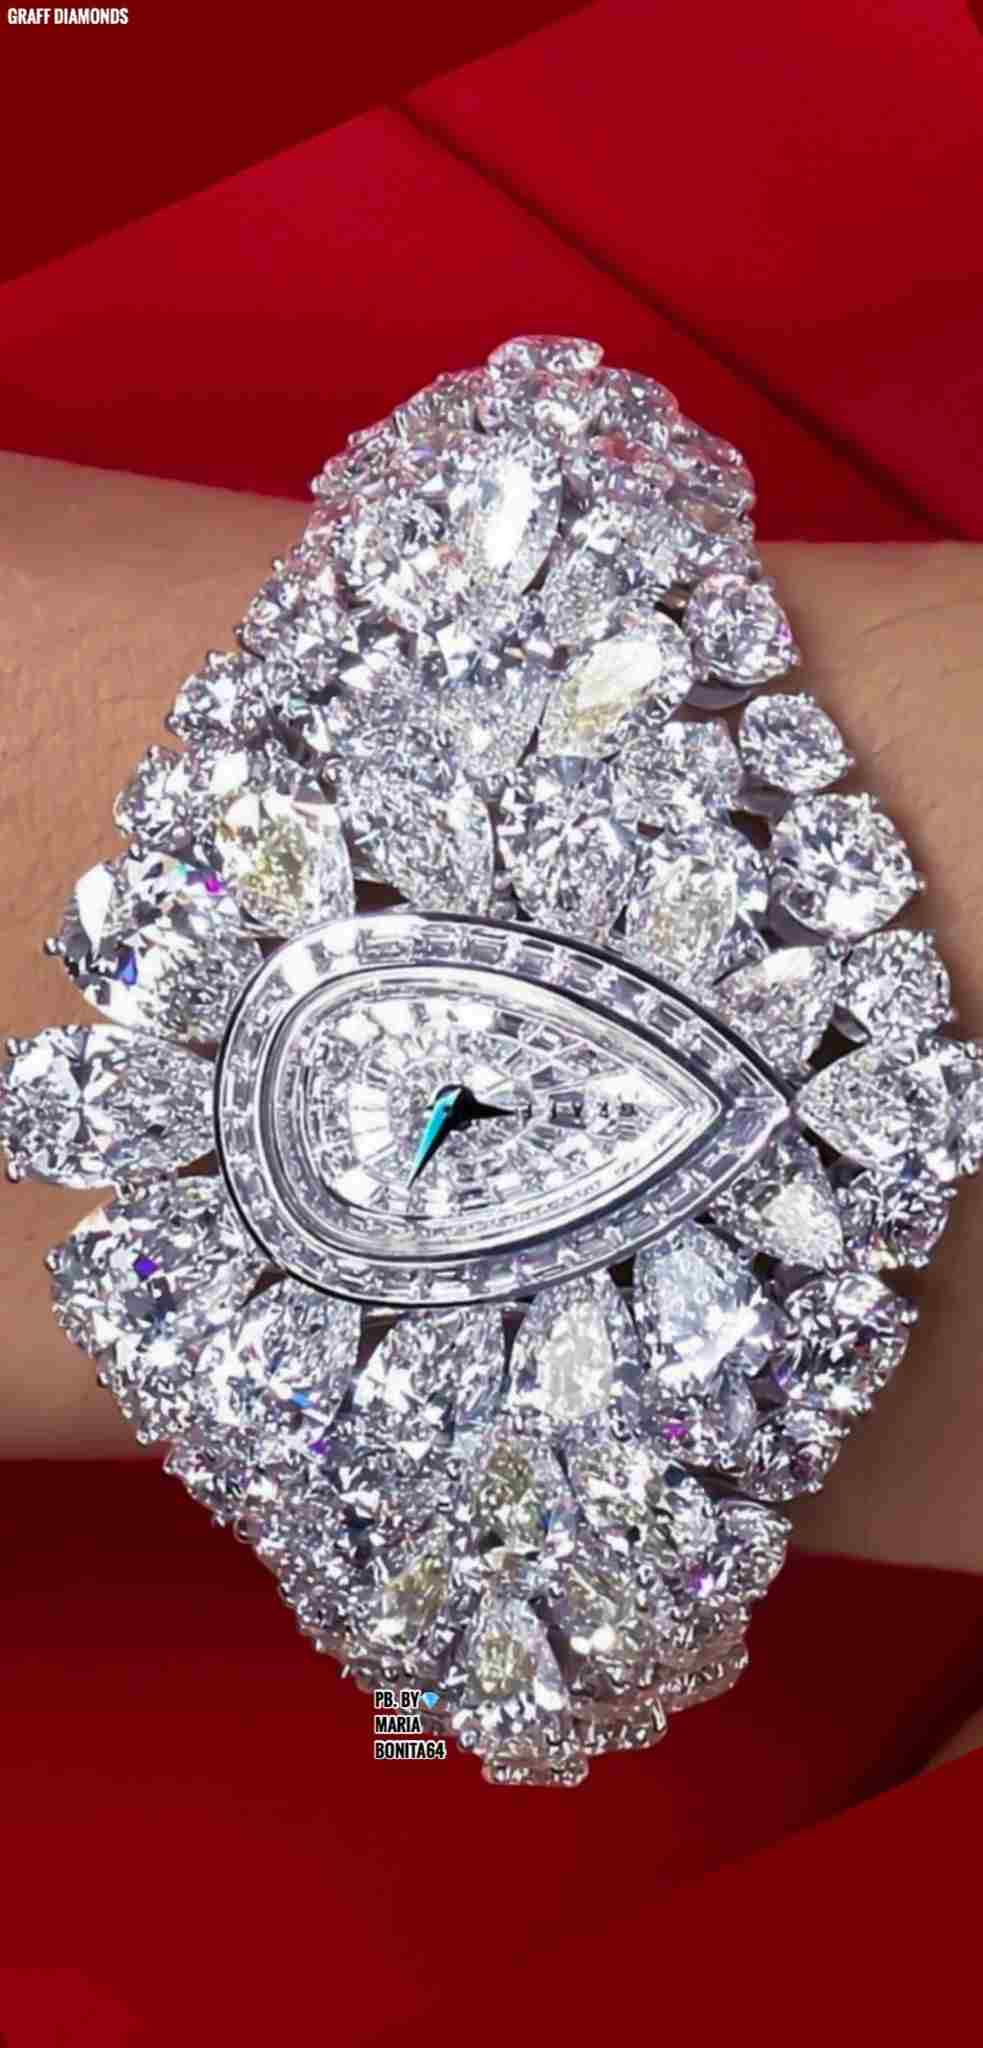 jam mahal 3 - Bertabur Diamond, 10 Jam Tangan Termahal di Dunia